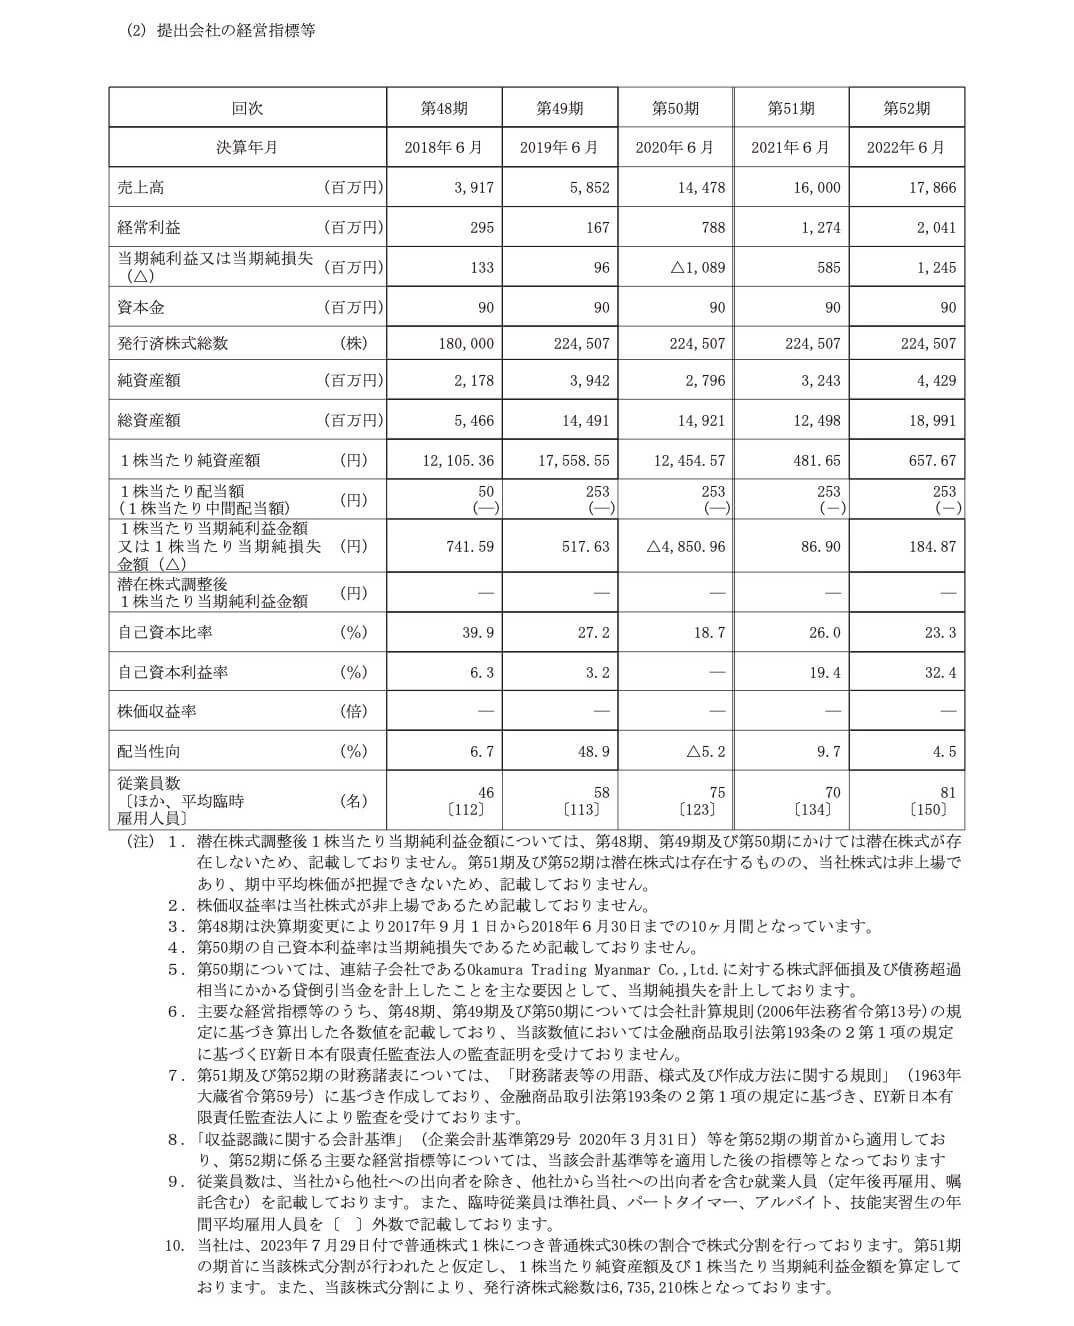 オカムラ食品工業(2938)の主要な経営指標等の推移(単独)